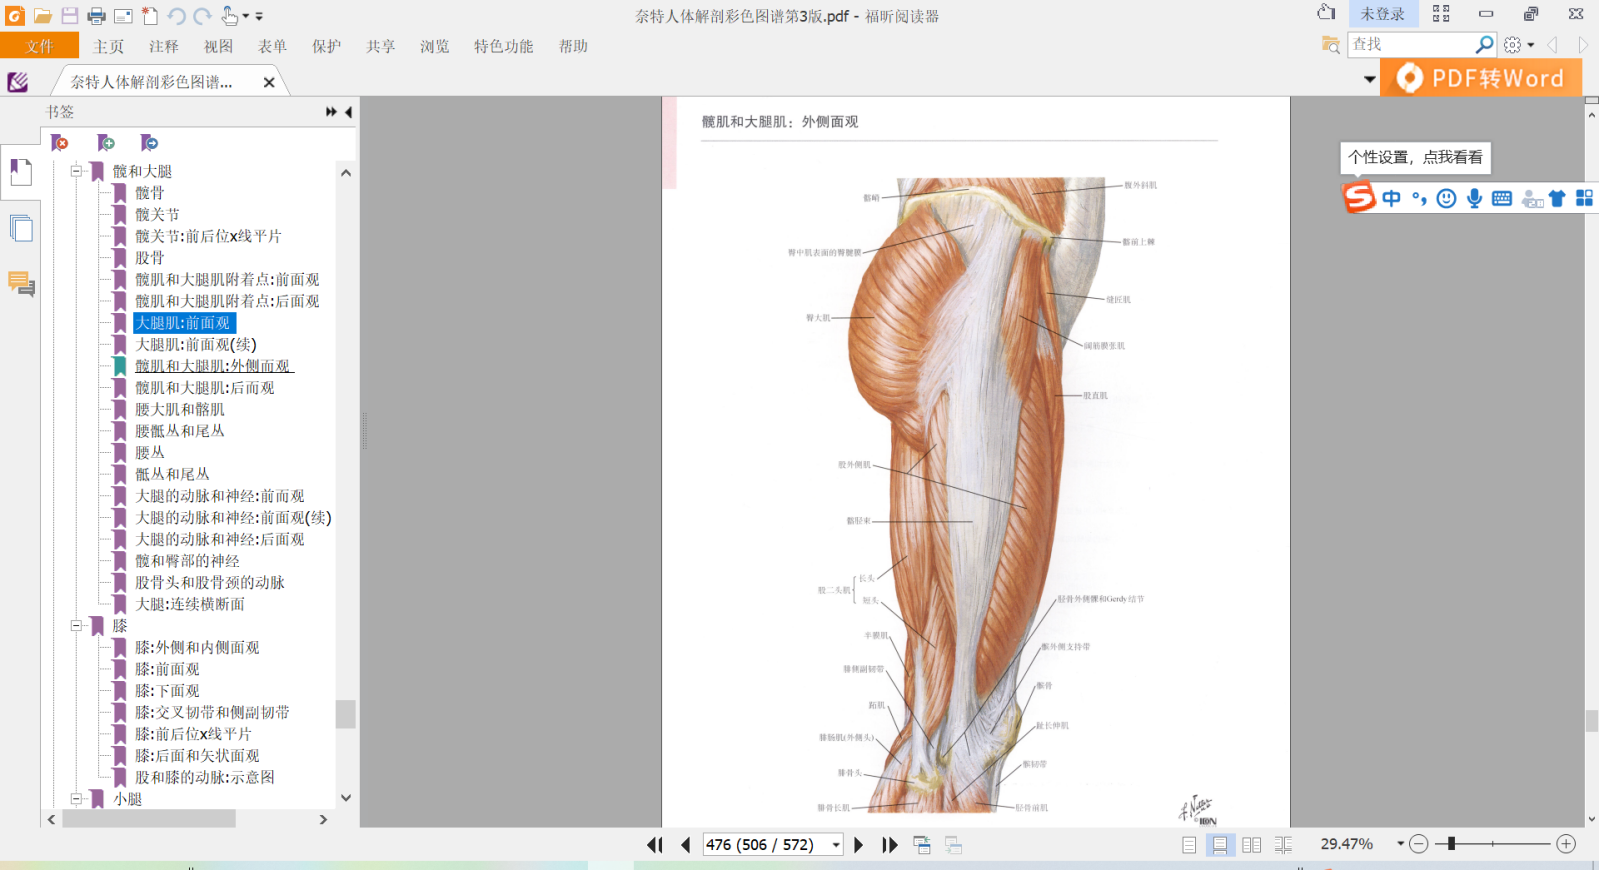 图2 大腿外侧肌肉示意图(图片来源:奈特人体解剖学图谱)